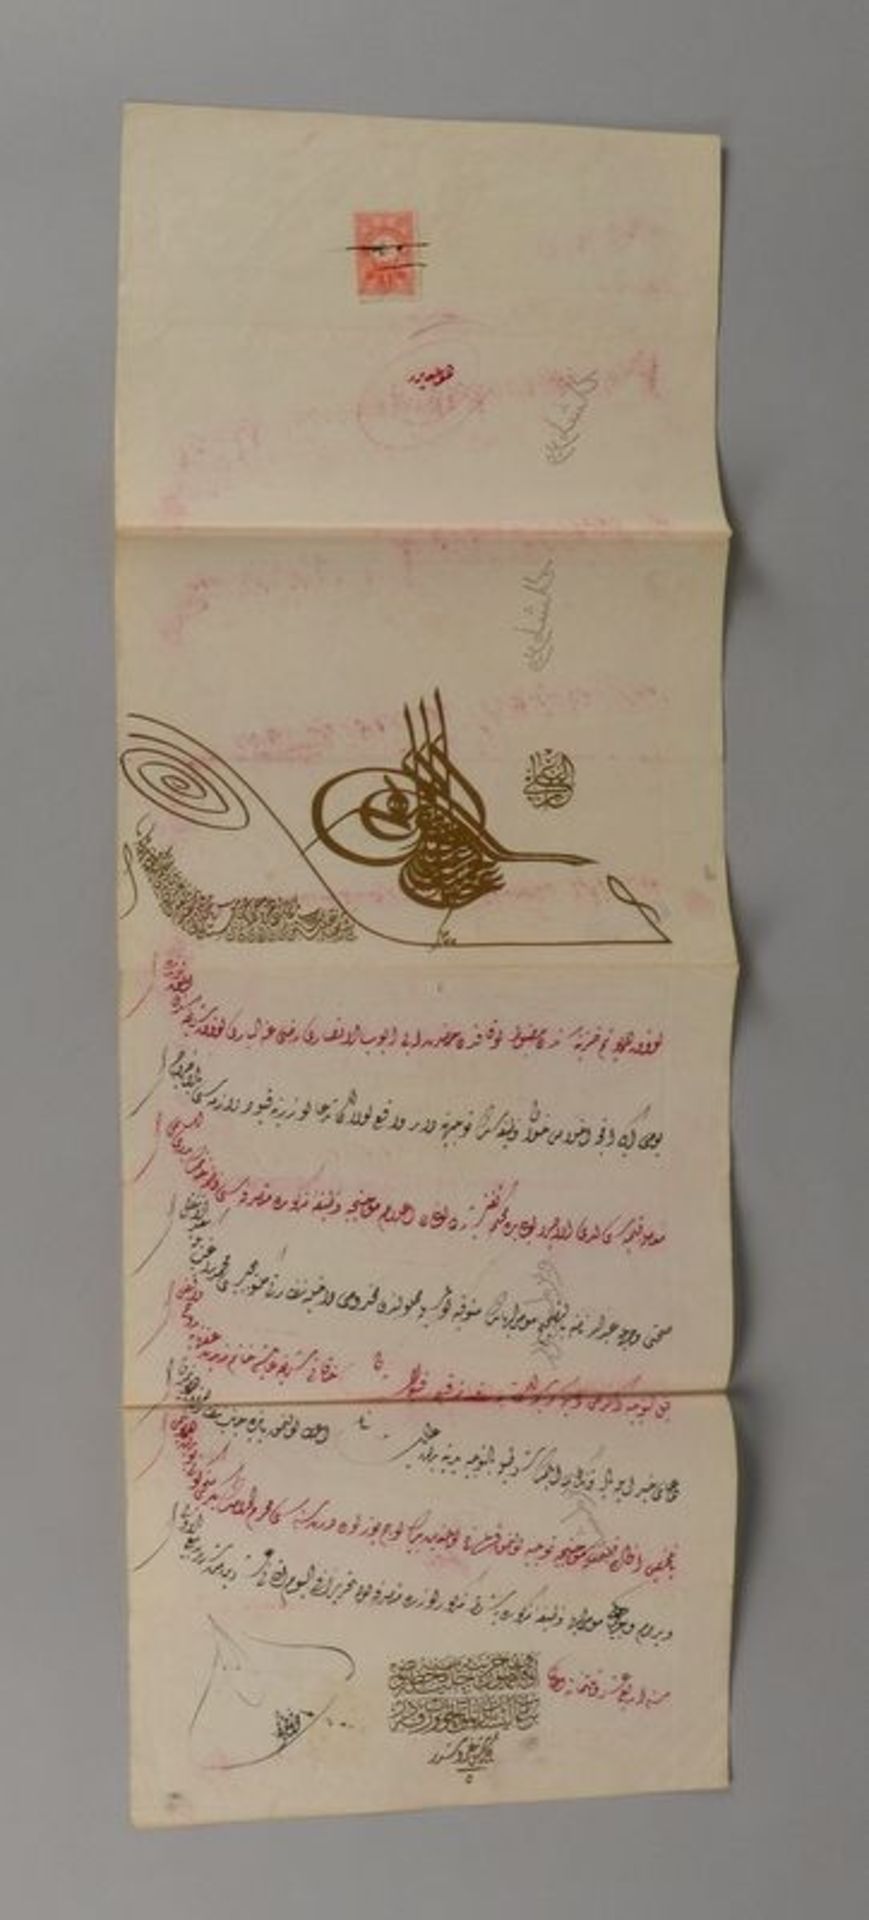 Amtliches Dokument (Persien - wohl beh&ouml;rdliche Anordnung), datiert &#039;1722&#039;, mit Regist